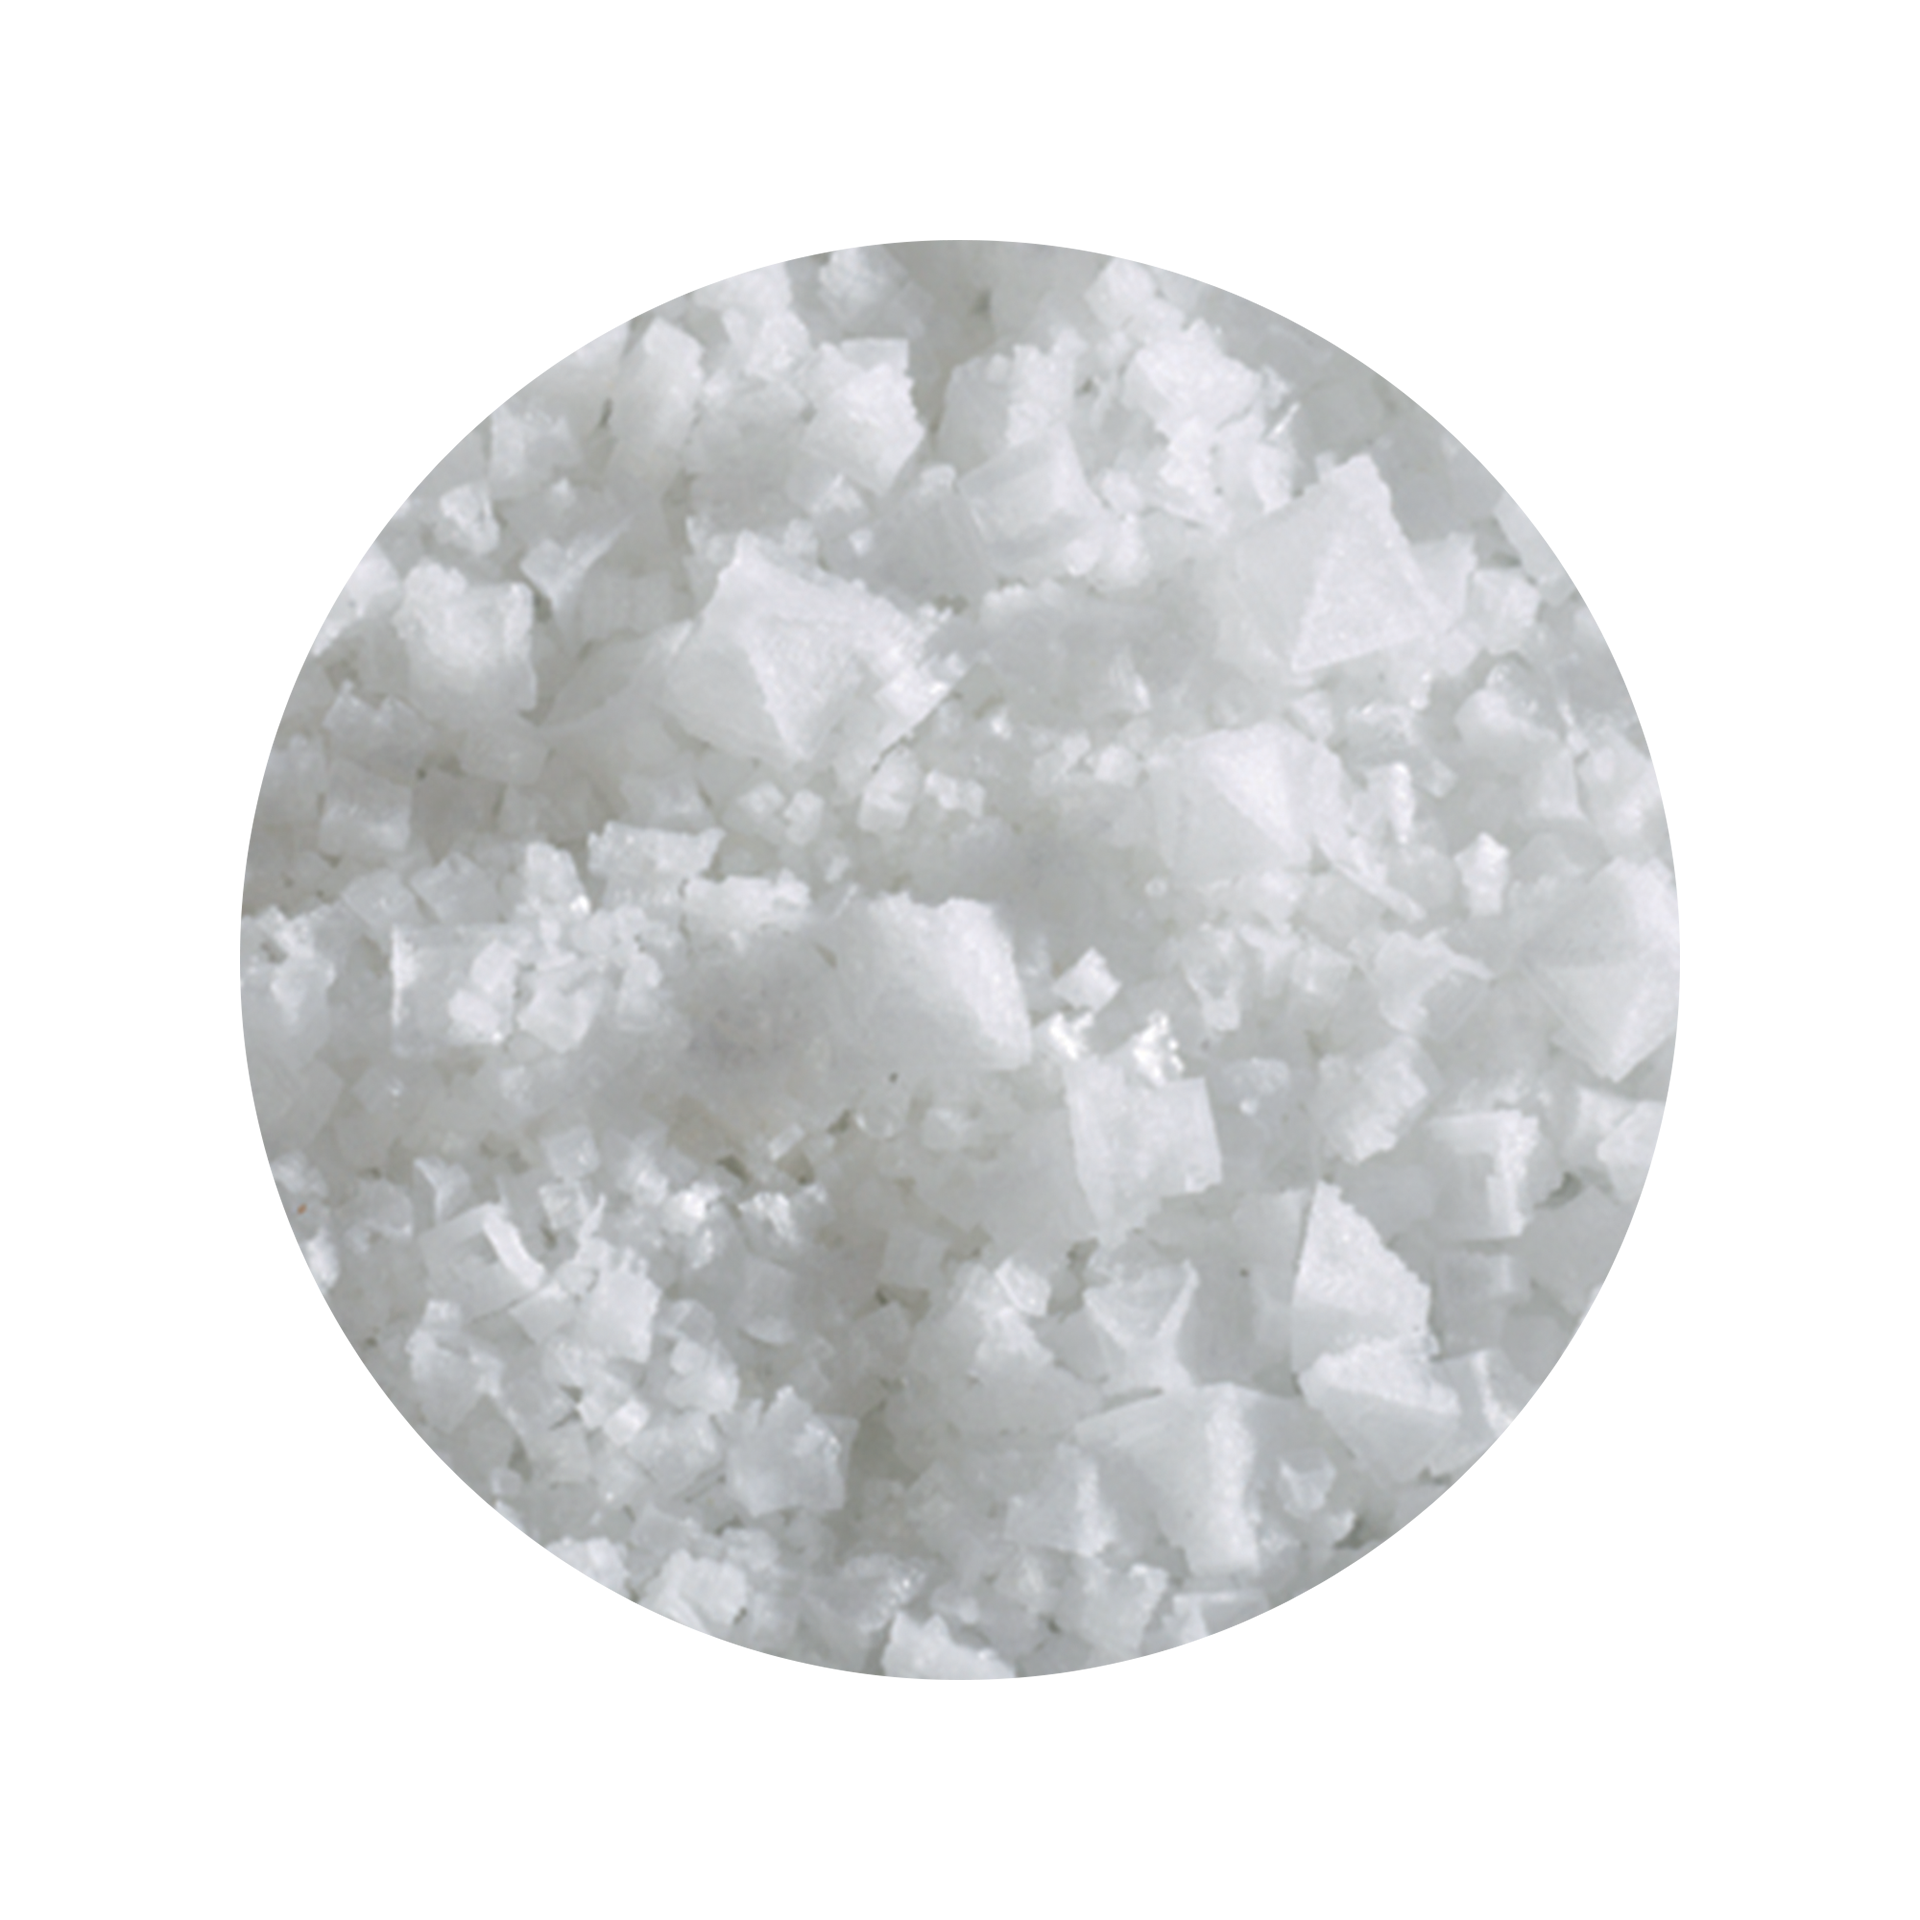 Indisches Pyramidenflocken Salz - 1 kg Beutel